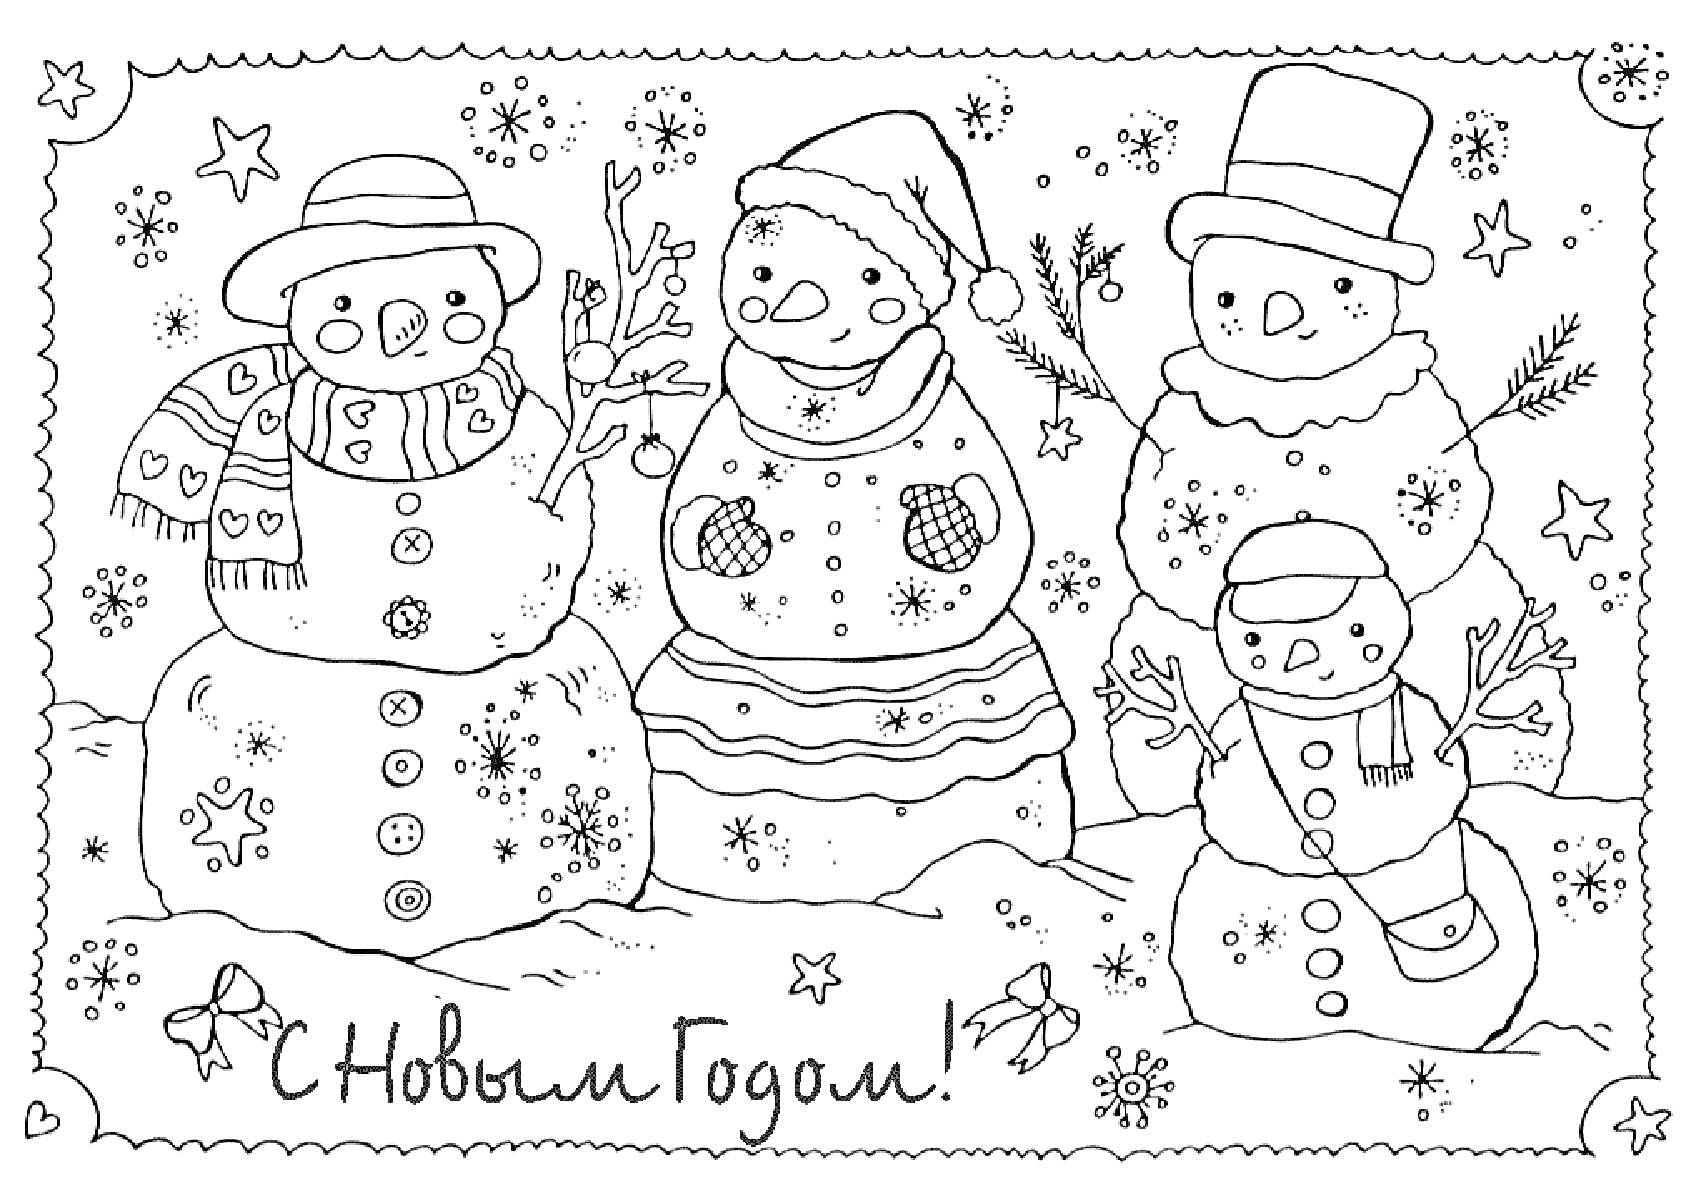 Раскраска С Новым Годом! Четыре снеговика в шапках и шарфах, звезды, снежинки, елки, снежные сугробы